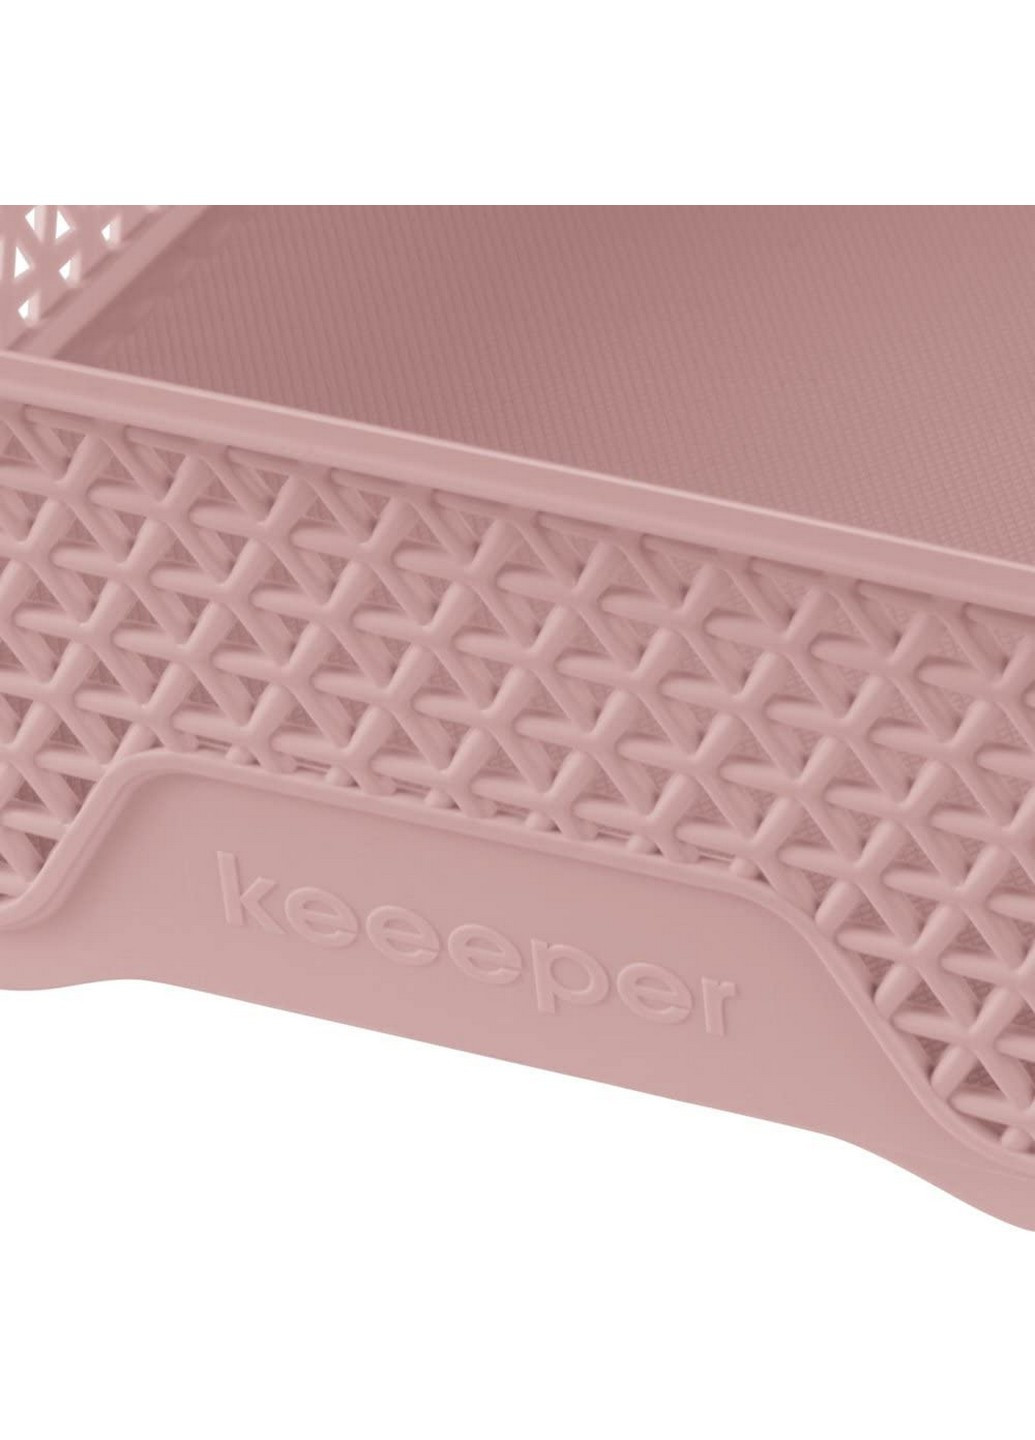 Корзина для хранения Мirko А-5 розовая (КЕЕ-372.1) Keeeper (217310024)